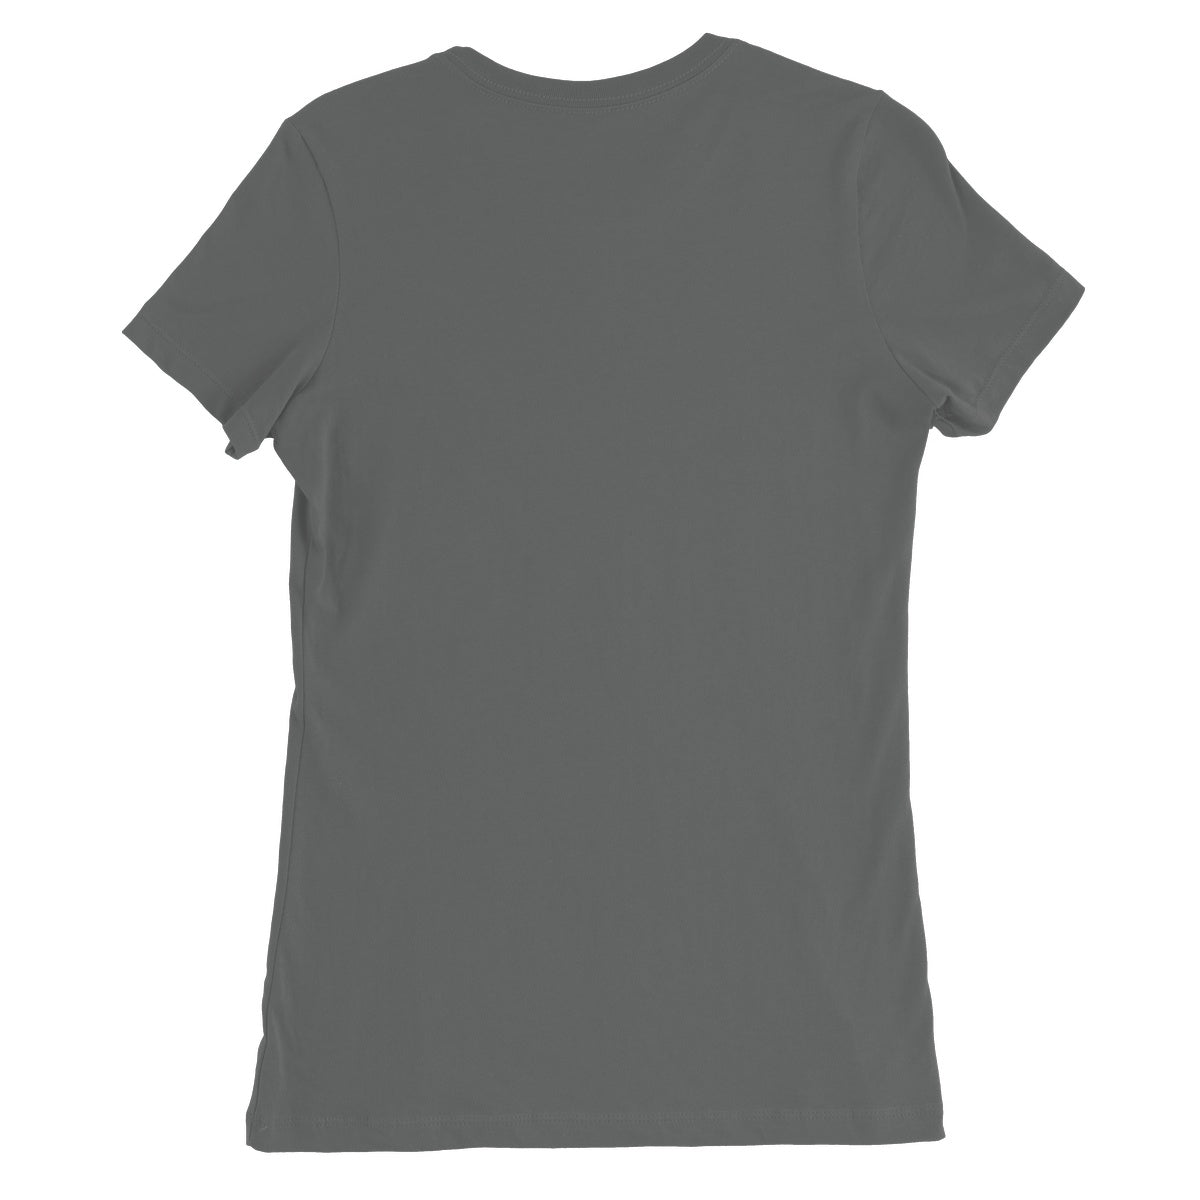 Jim &quot;Shalom!&quot; Apparel Women&#39;s Favourite T-Shirt